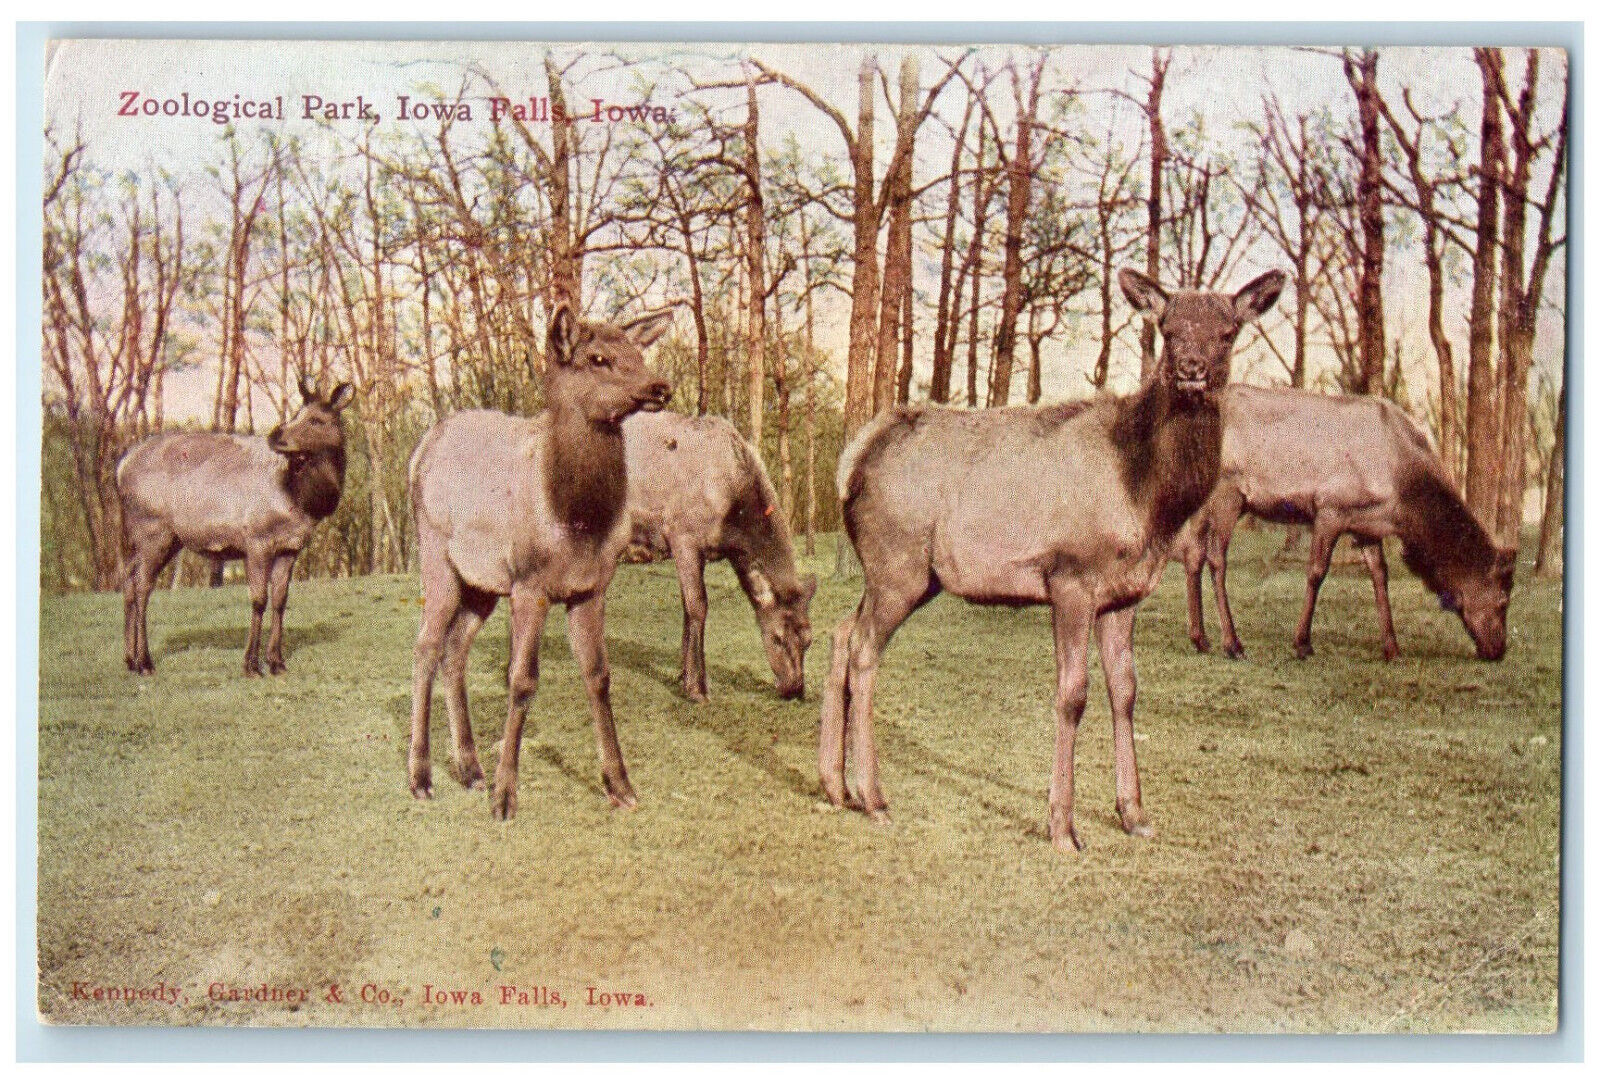 c1910 Animal Scene at Zoological Park Iowa Falls Iowa IA Antique Postcard